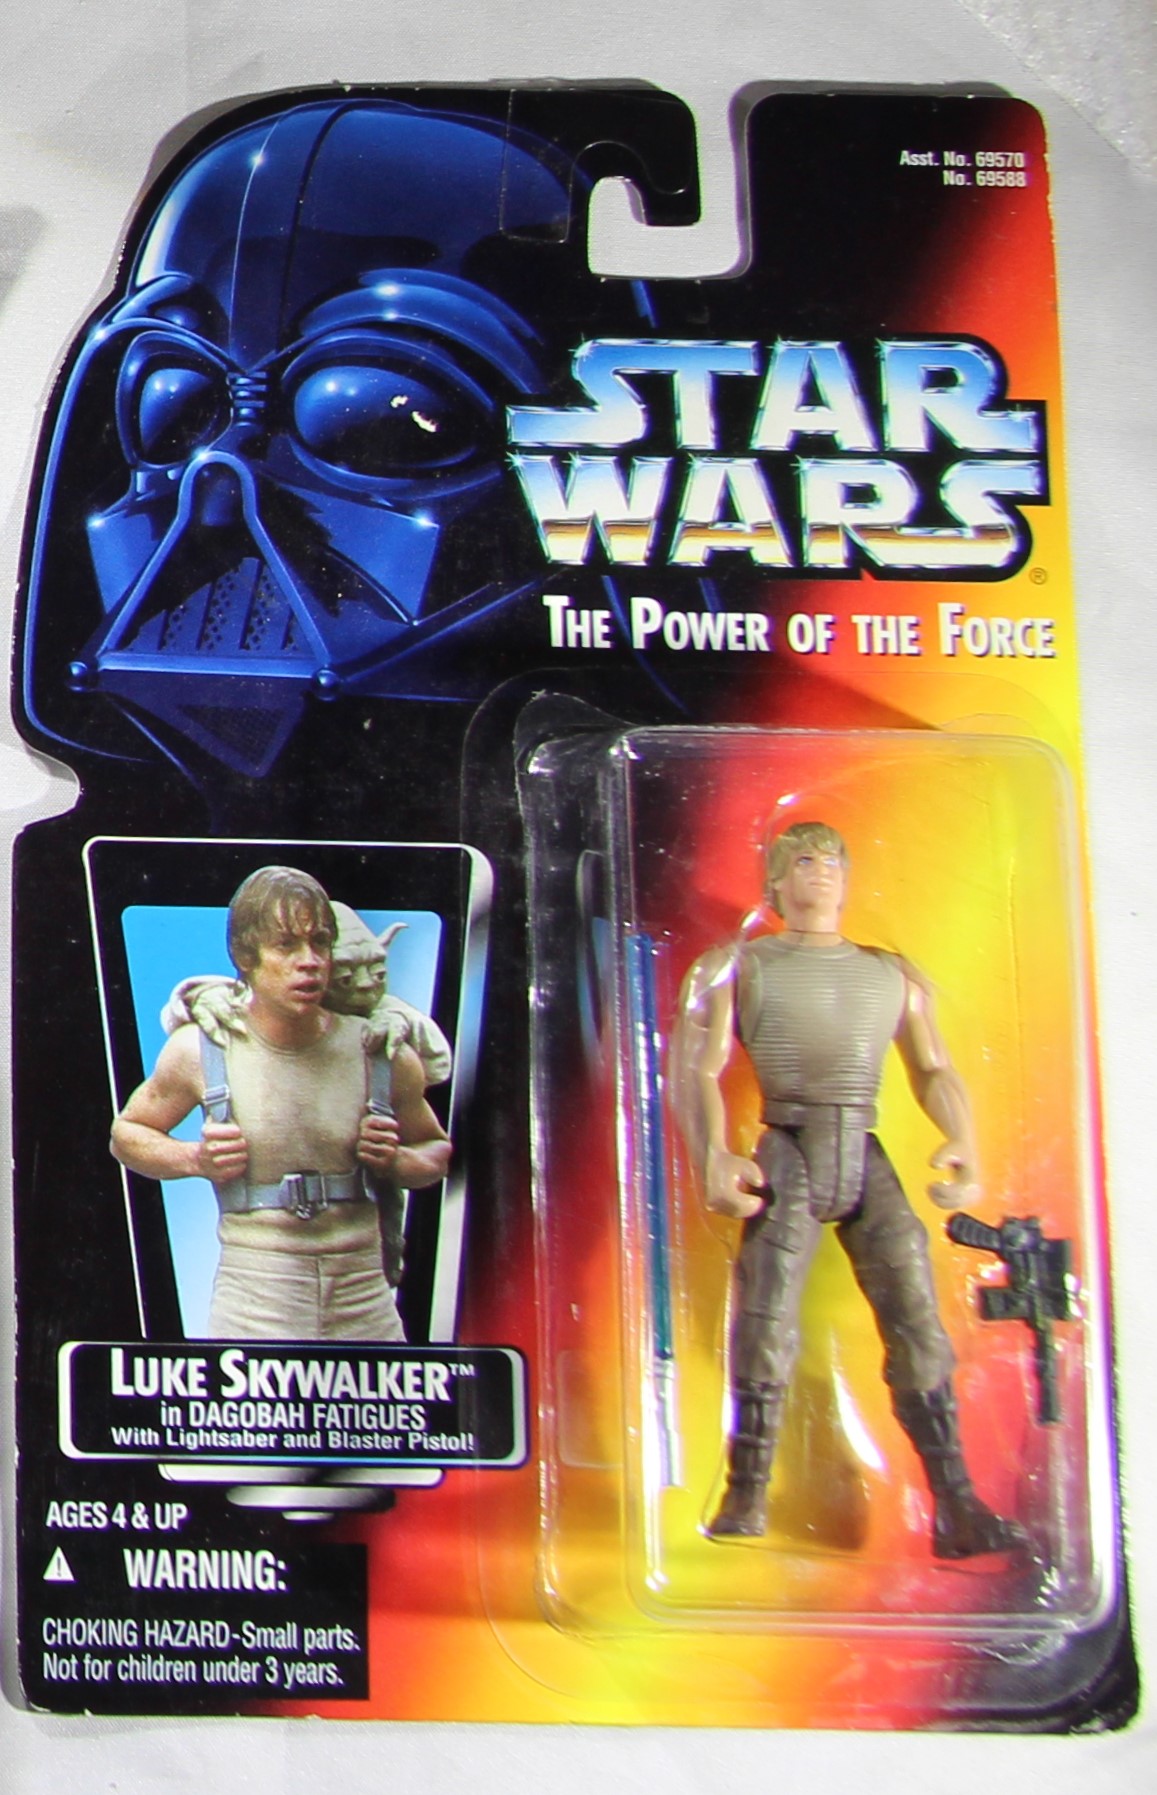 Luke Skywalker - Dagobah